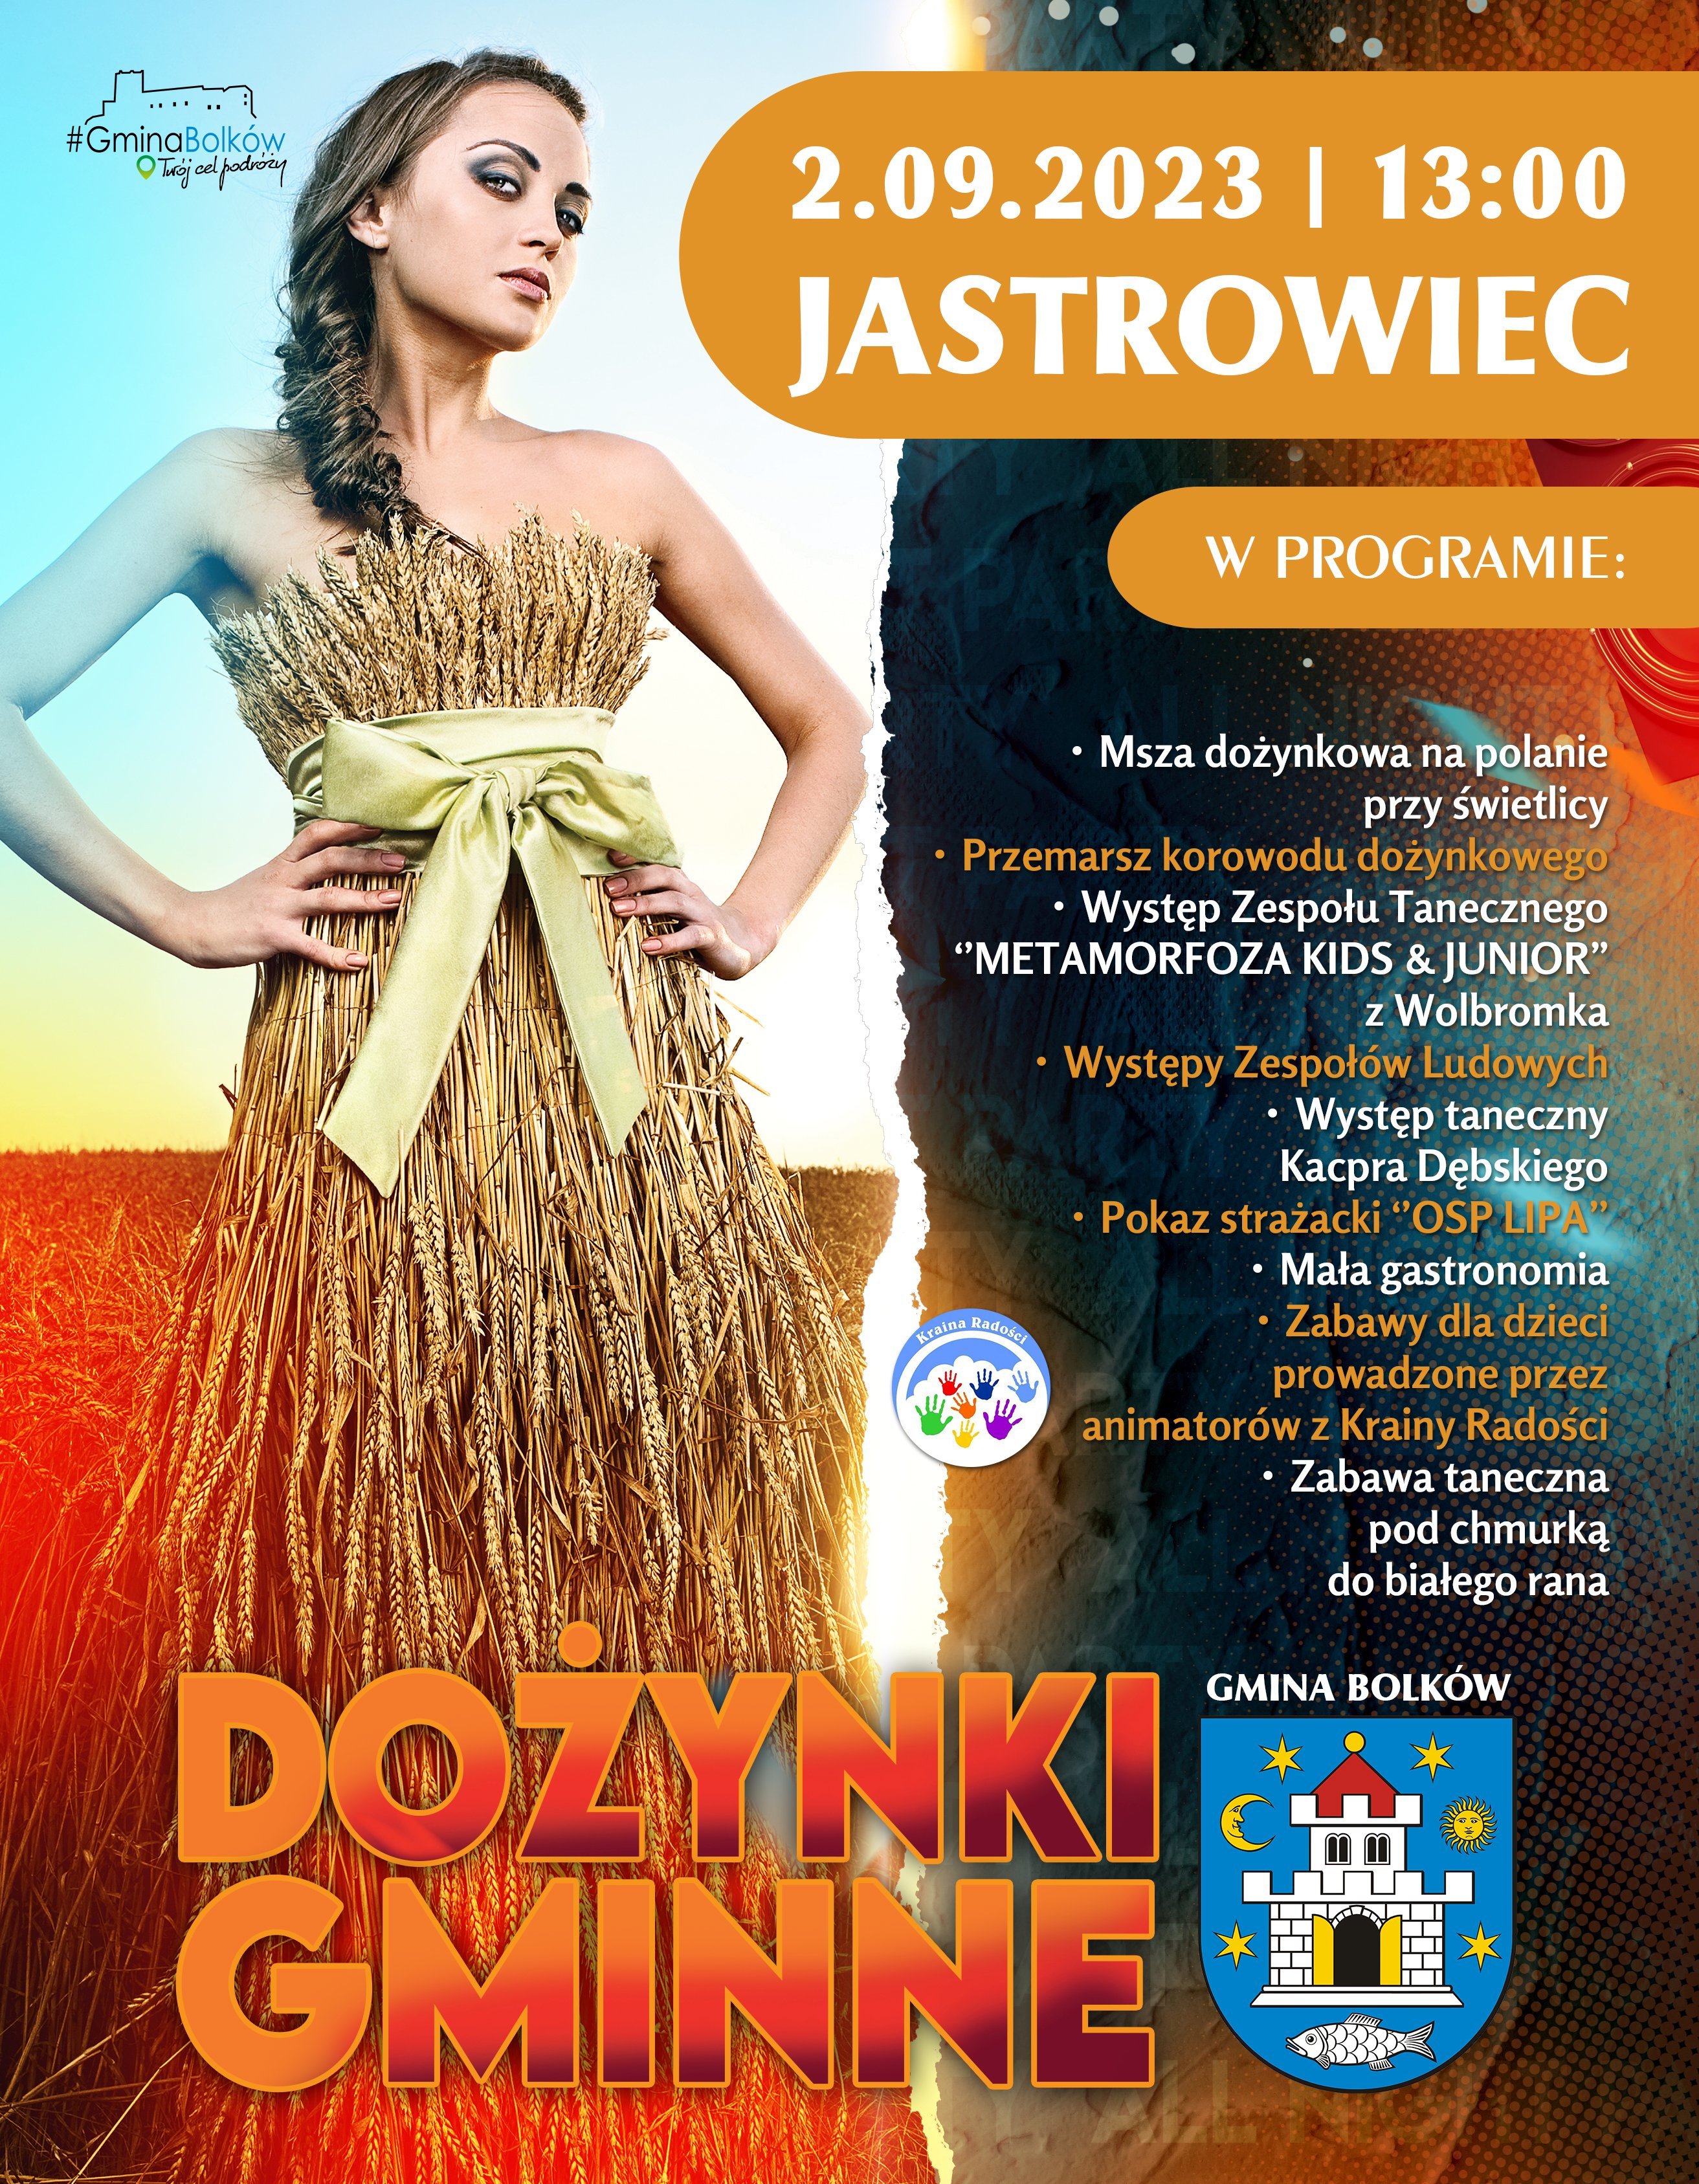 plakat promujący dożynki gminne 2023 w gminie bolków, na zdjęciu widoczna kobieta w stroju ze zboża 